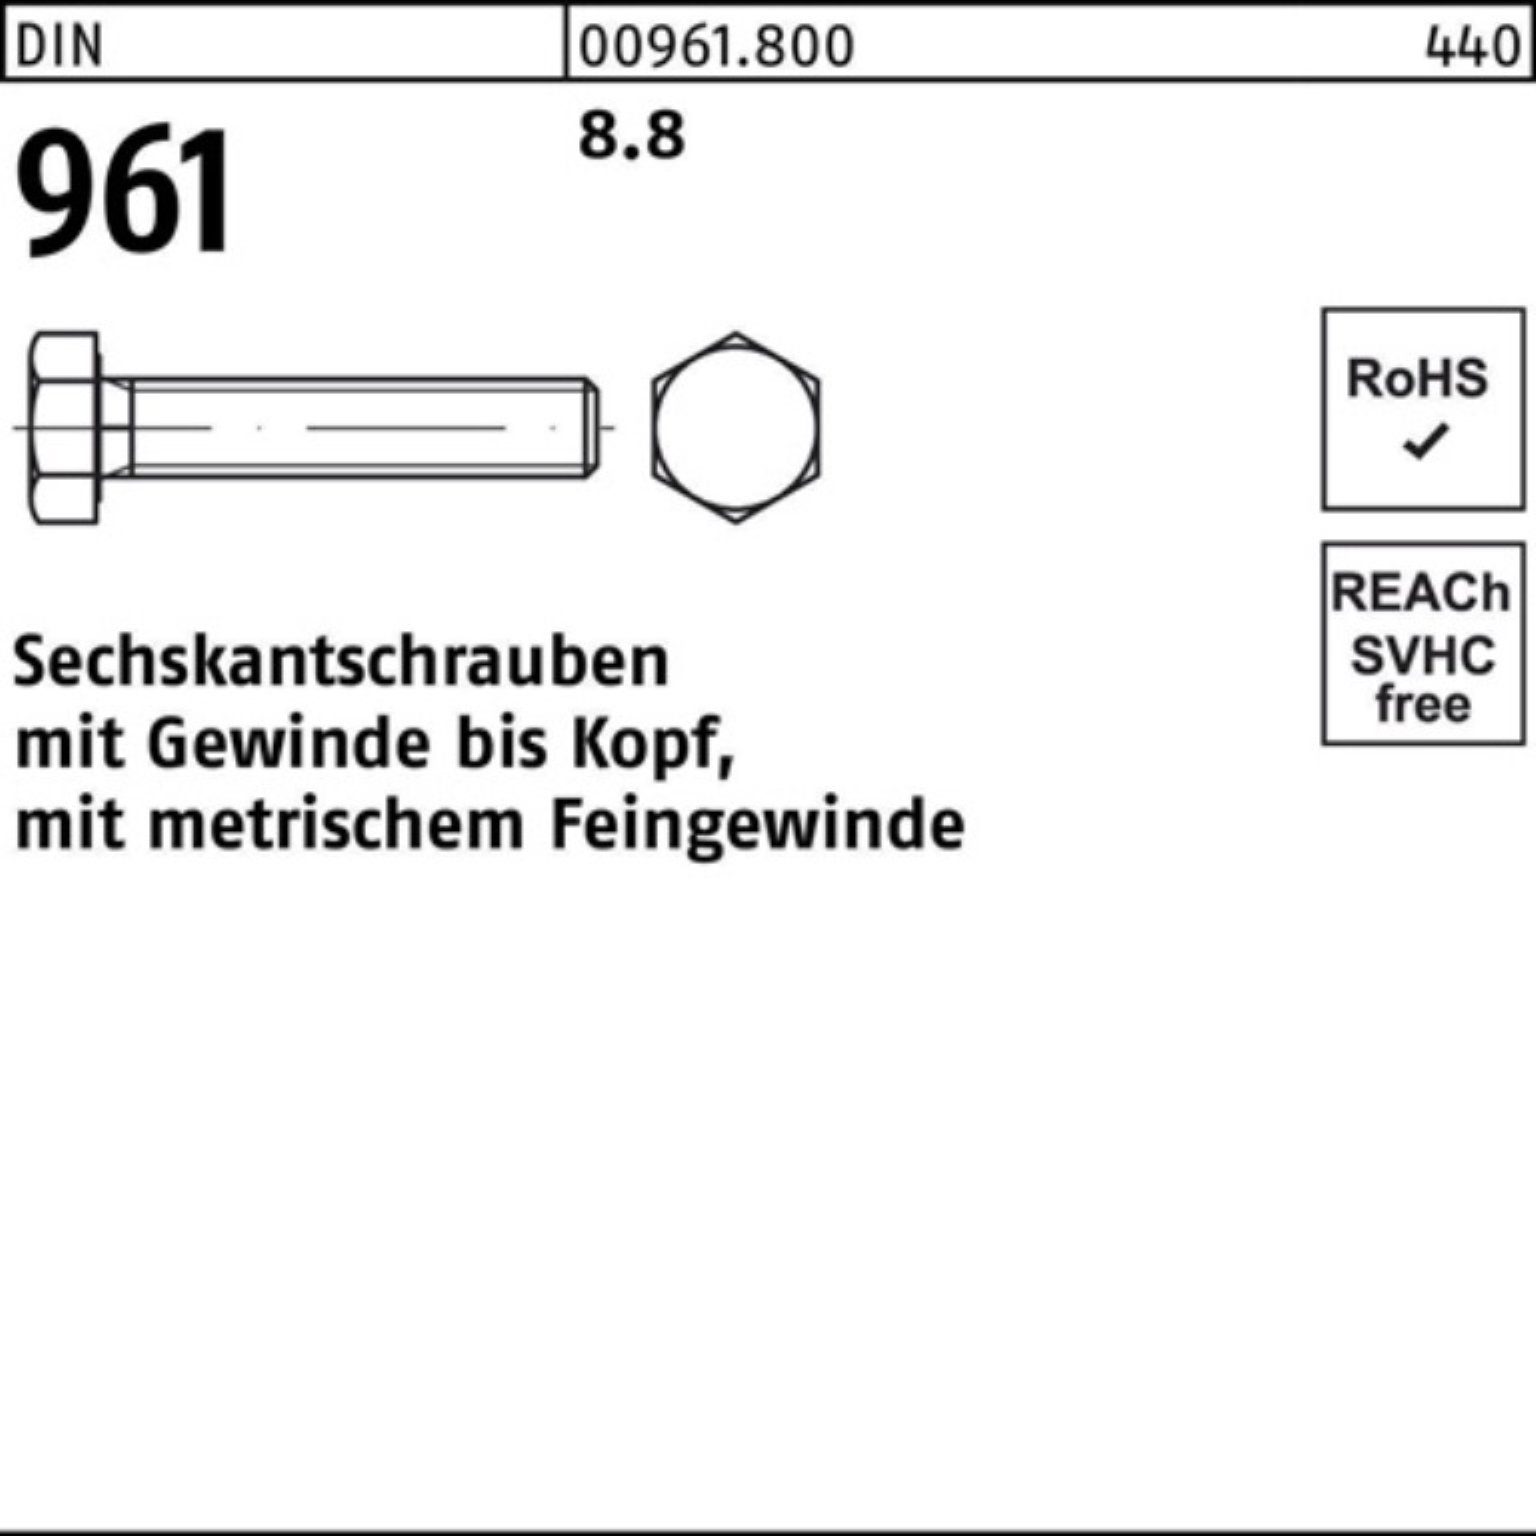 Reyher Sechskantschraube 100er VG 961 Pack 8.8 40 Sechskantschraube DIN Stück M16x1,5x 50 DIN